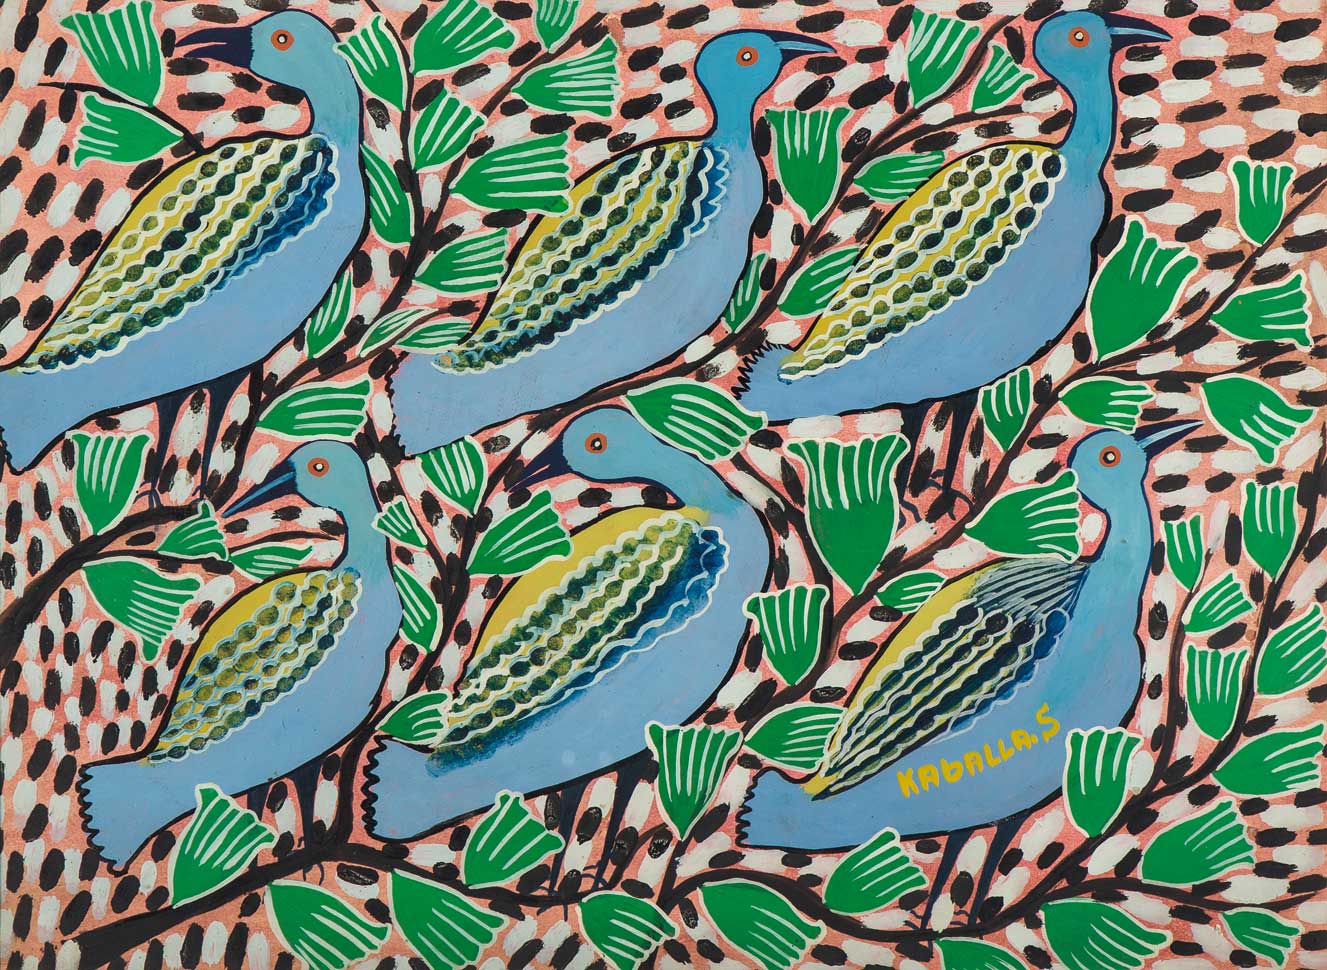 Palestine, 1976, huile sur toile (diptyque), 200 x 300 cm Collection OCP, Casablanca.